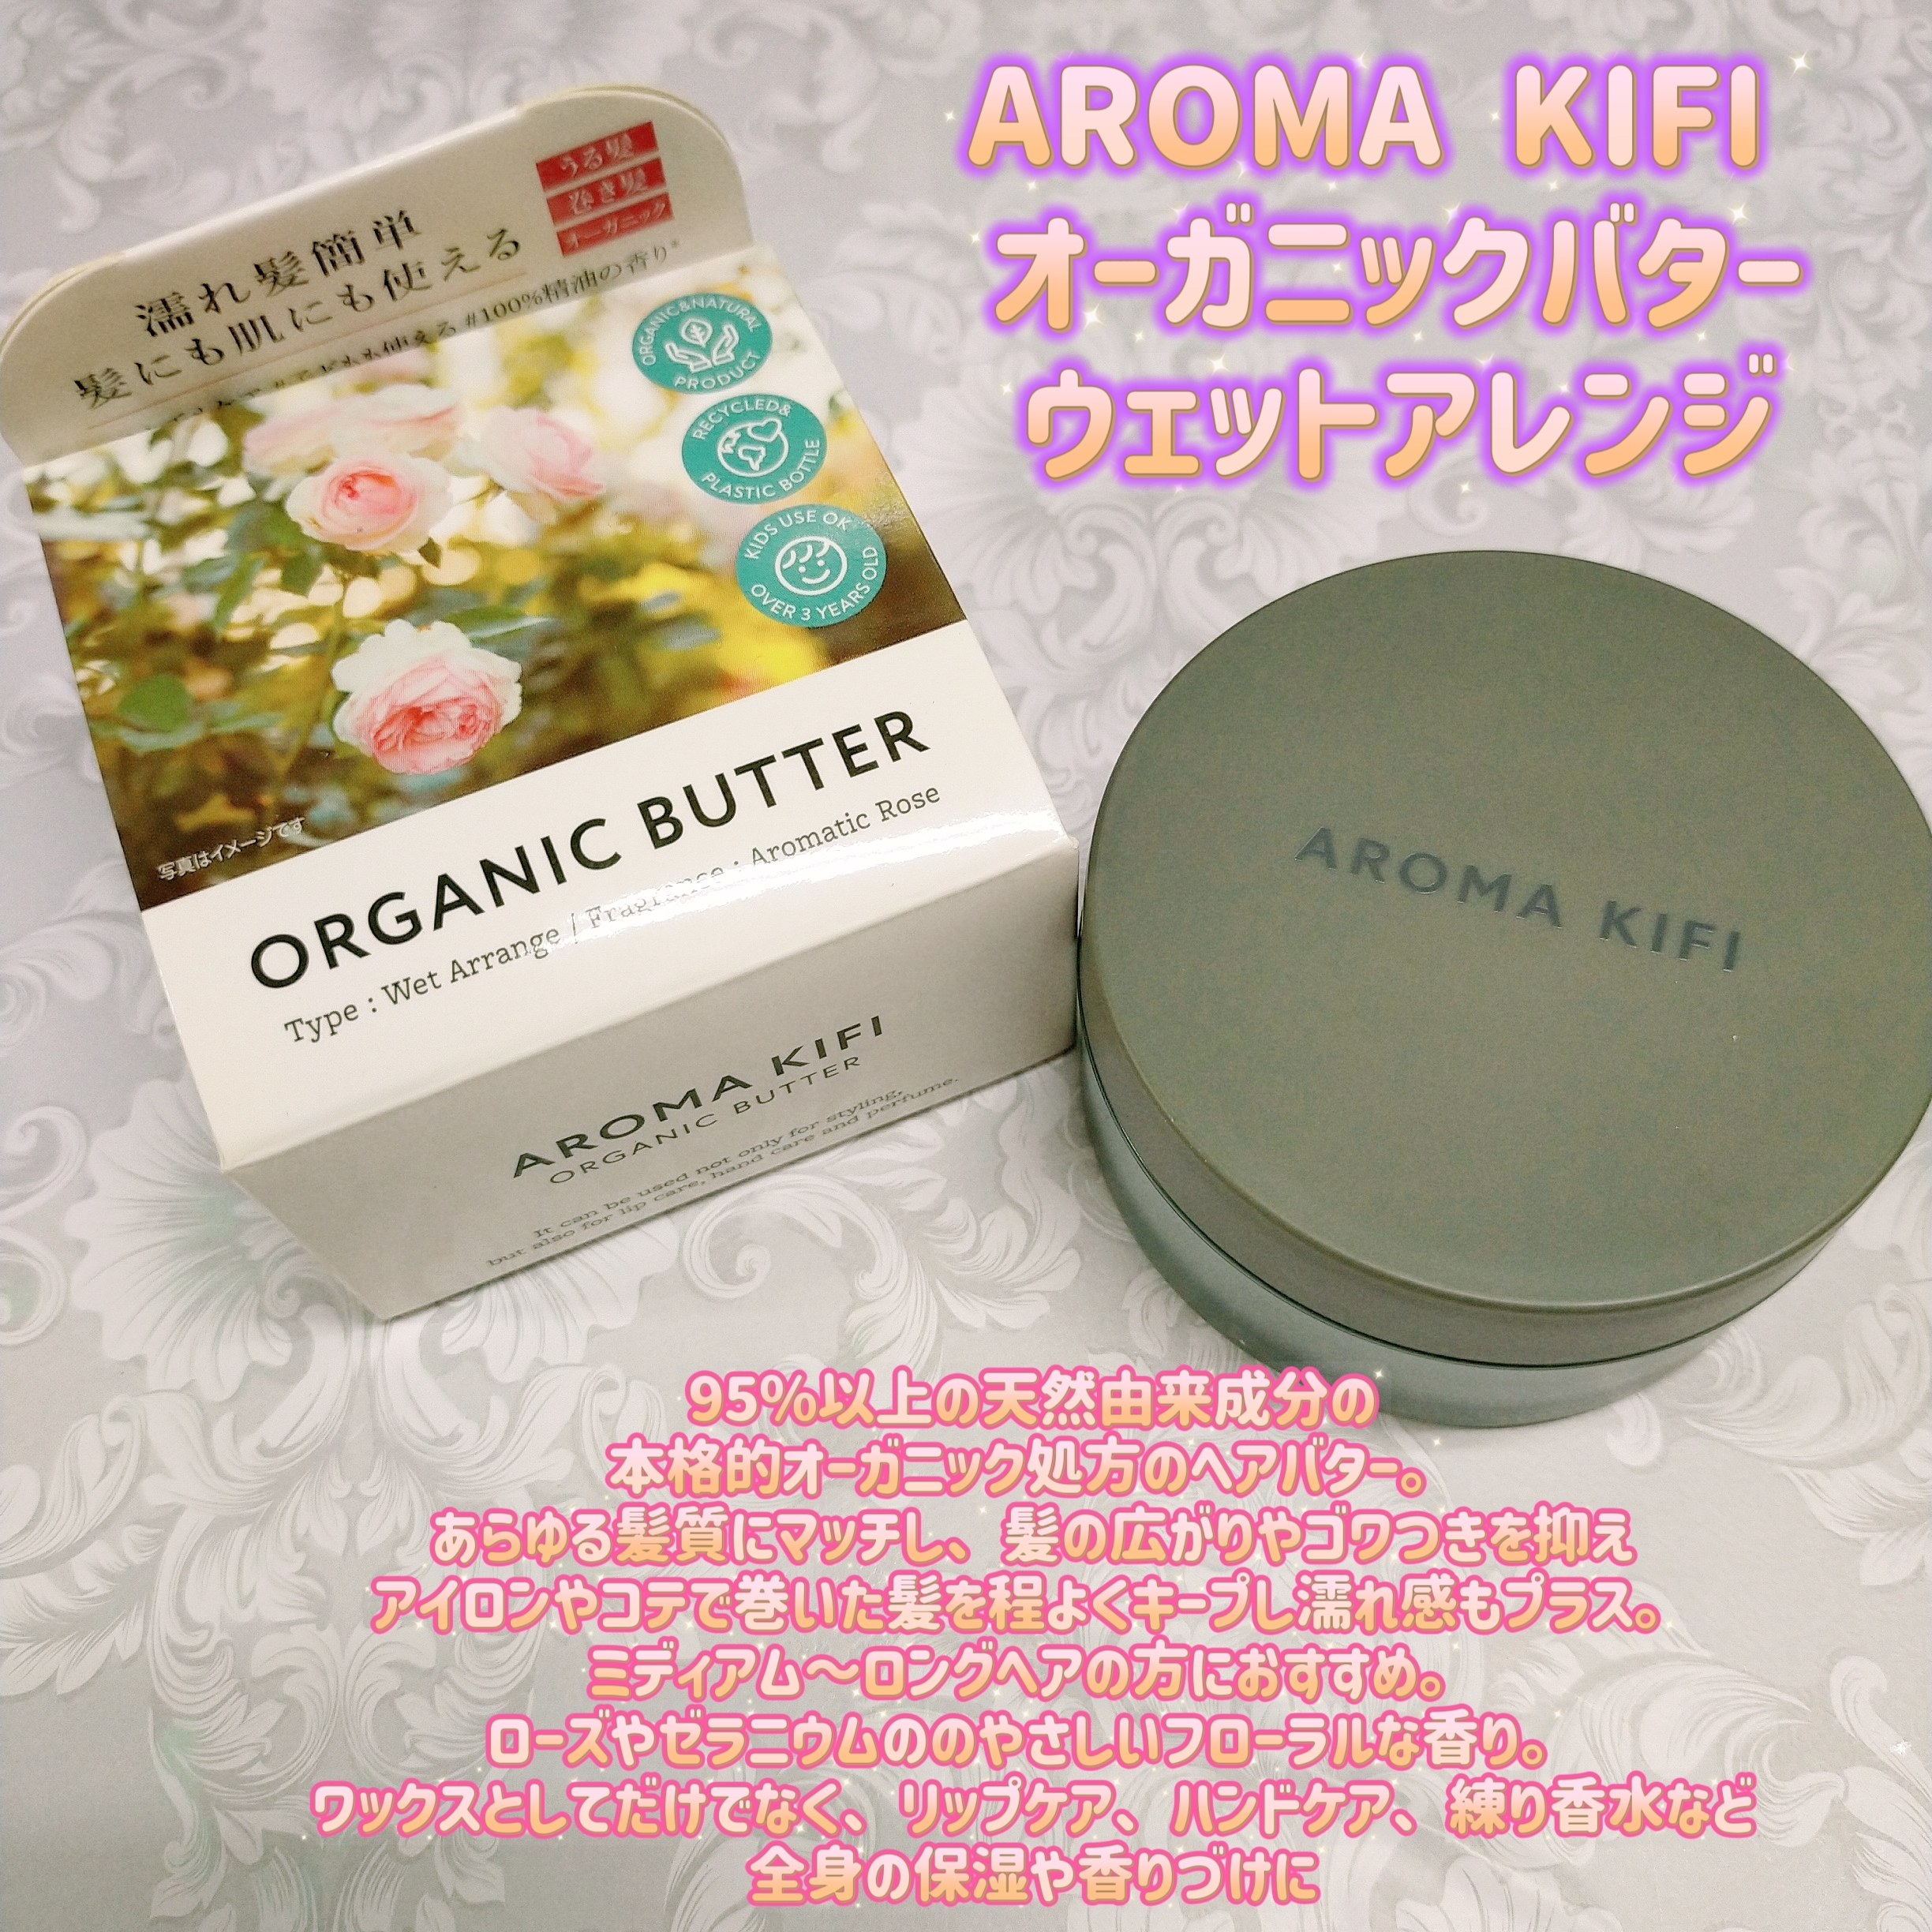 AROMA KIFI(アロマキフィ) オーガニックバター ウェットアレンジの良い点・メリットに関するみこさんの口コミ画像1